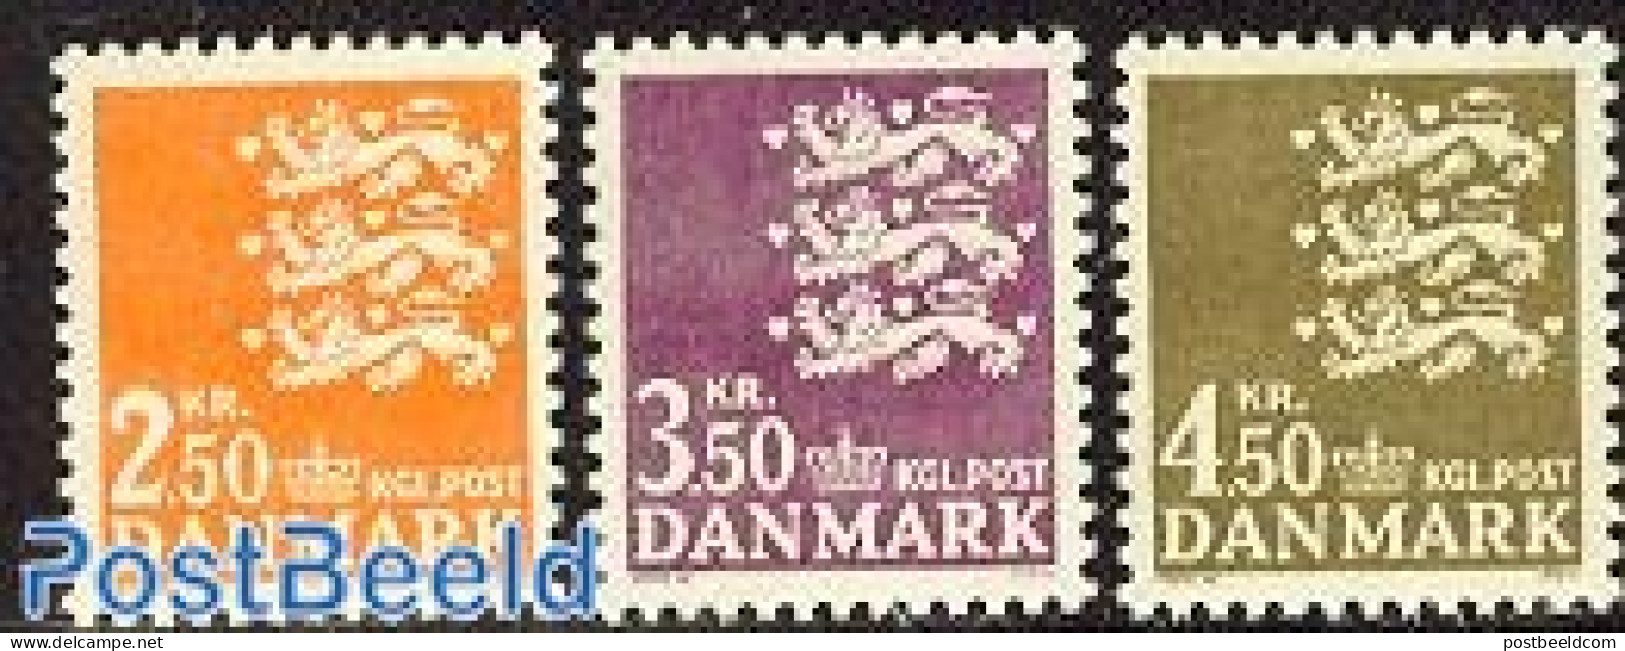 Denmark 1972 Definitives 3v, Mint NH - Unused Stamps